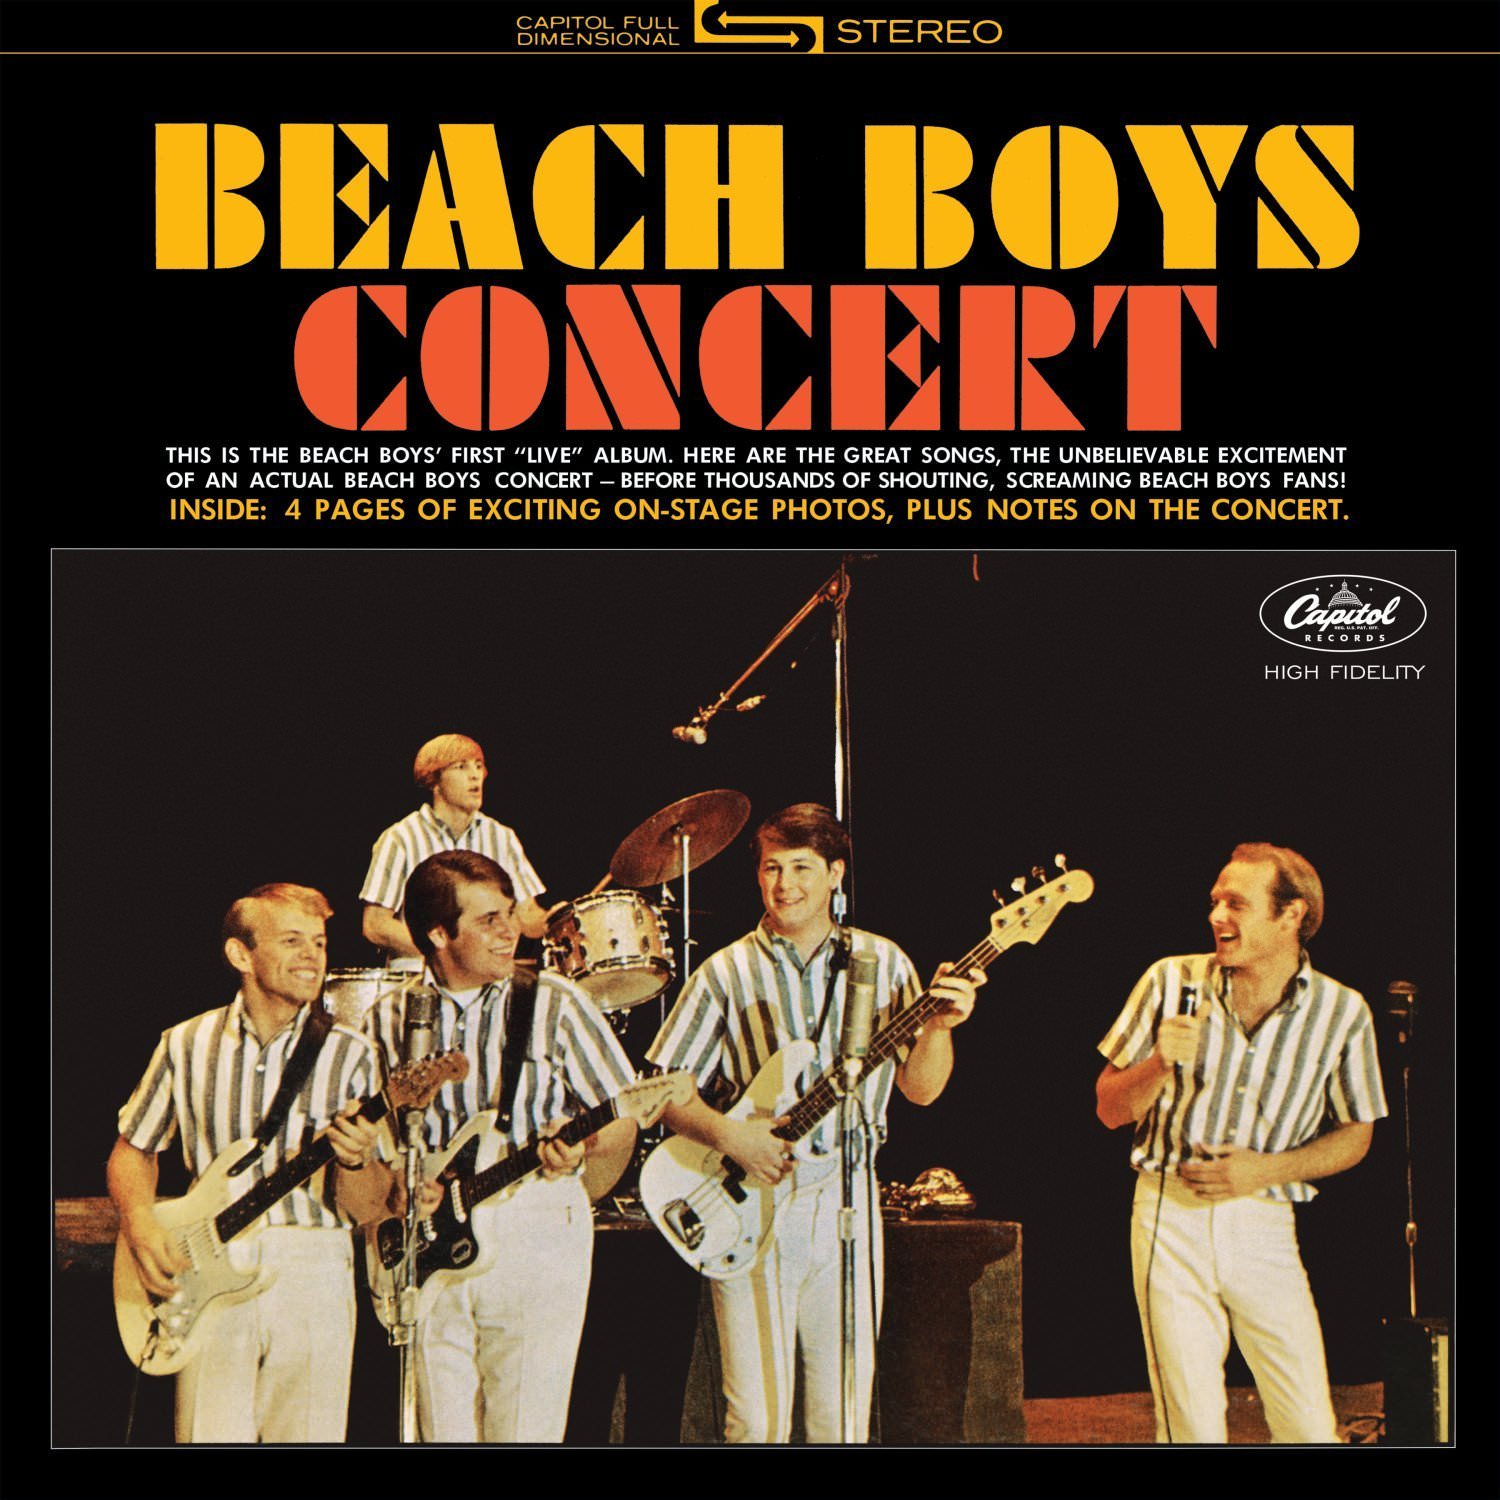 The Beach Boys - Beach Boys Concert (1964/2015) [HDTracks FLAC 24bit/192kHz]